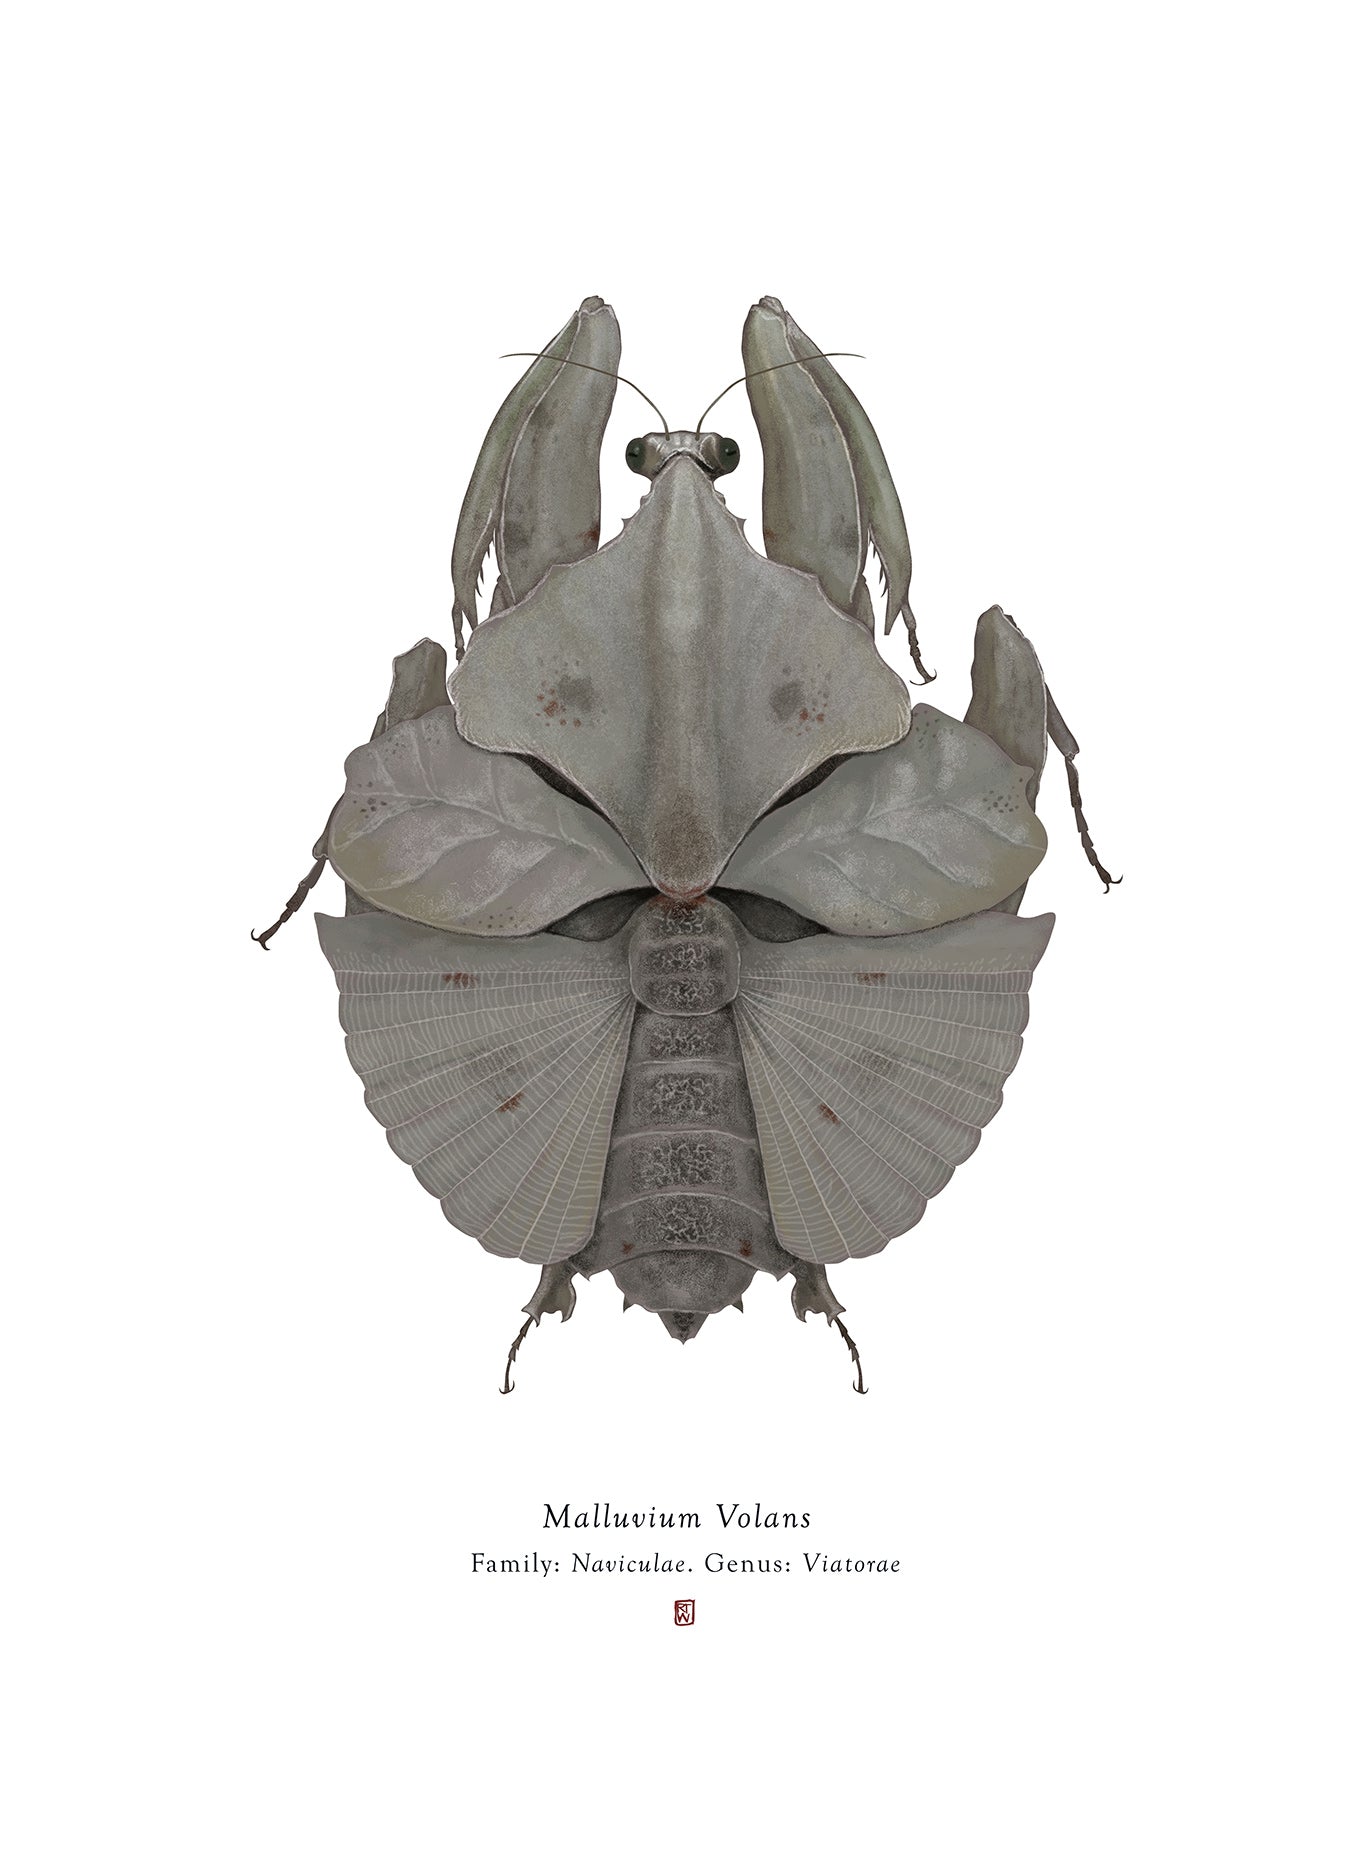  Malluvium Volans (Millenium Falcon)